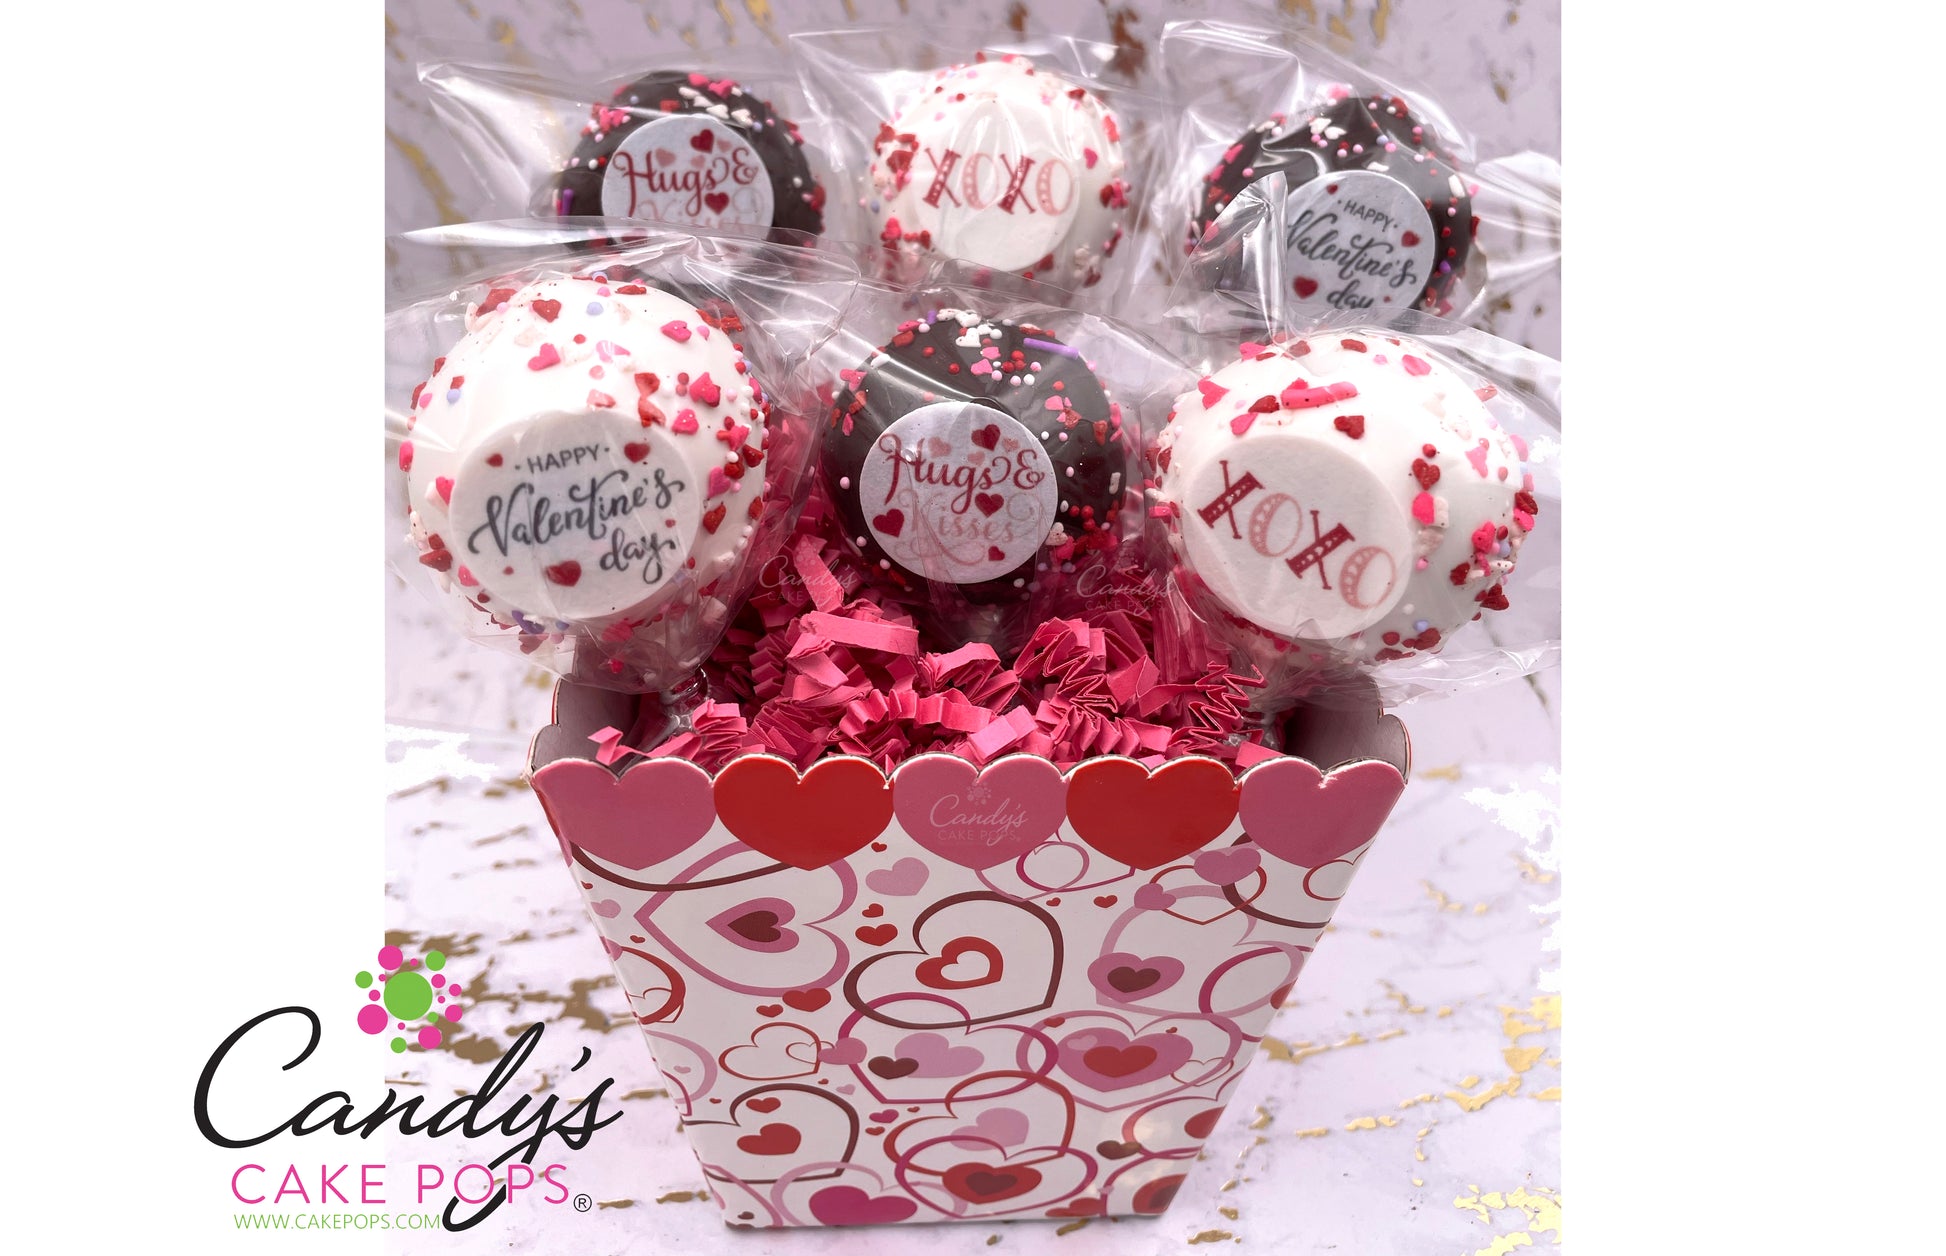 Half Dozen Valentine's Day Conversation Heart Cake Pop Gift Box - Candy's Cake Pops